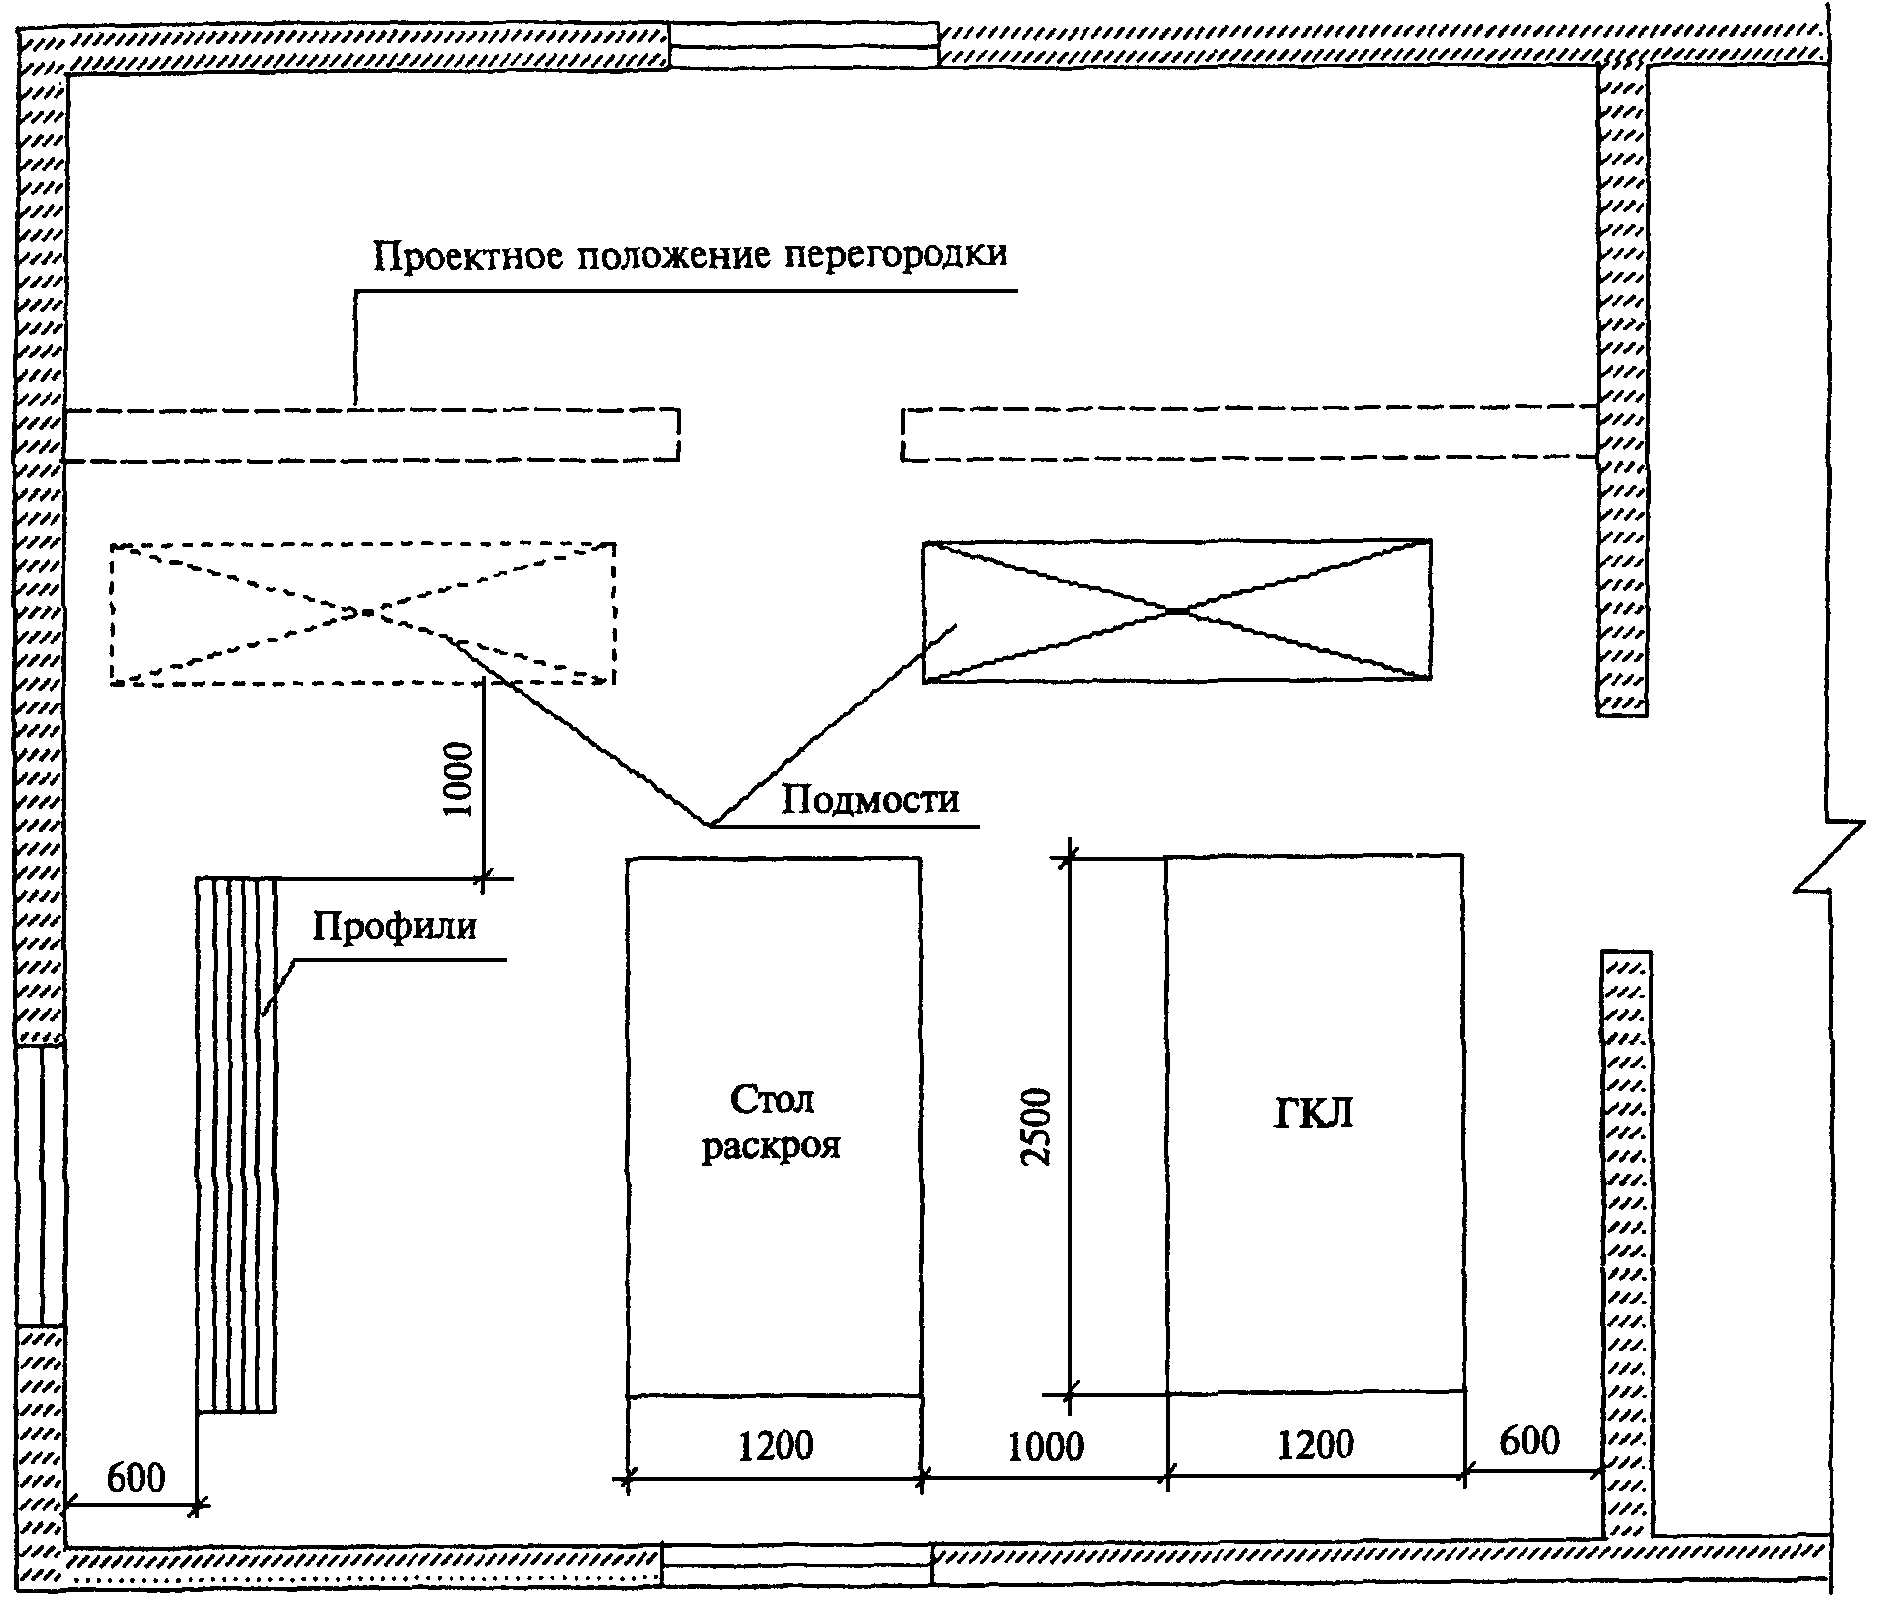 Технологическая карта перегородки с111